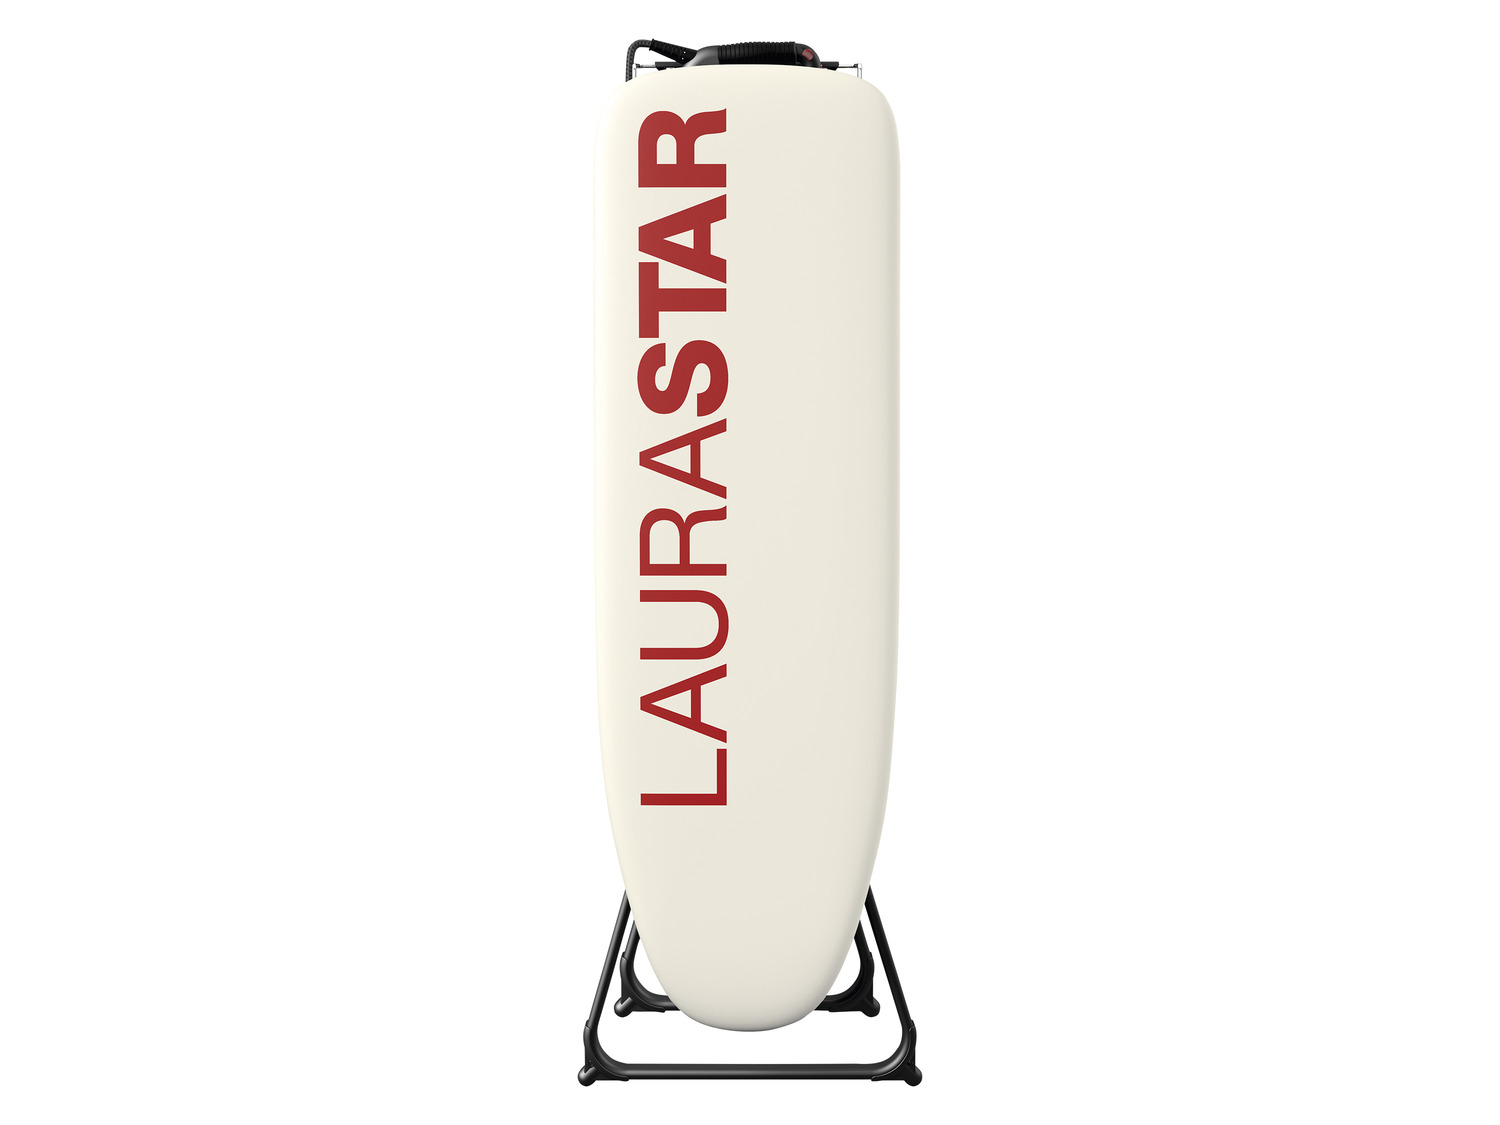 Laurastar Dampf-Bügelsystem »Go«, zusammenklappbar